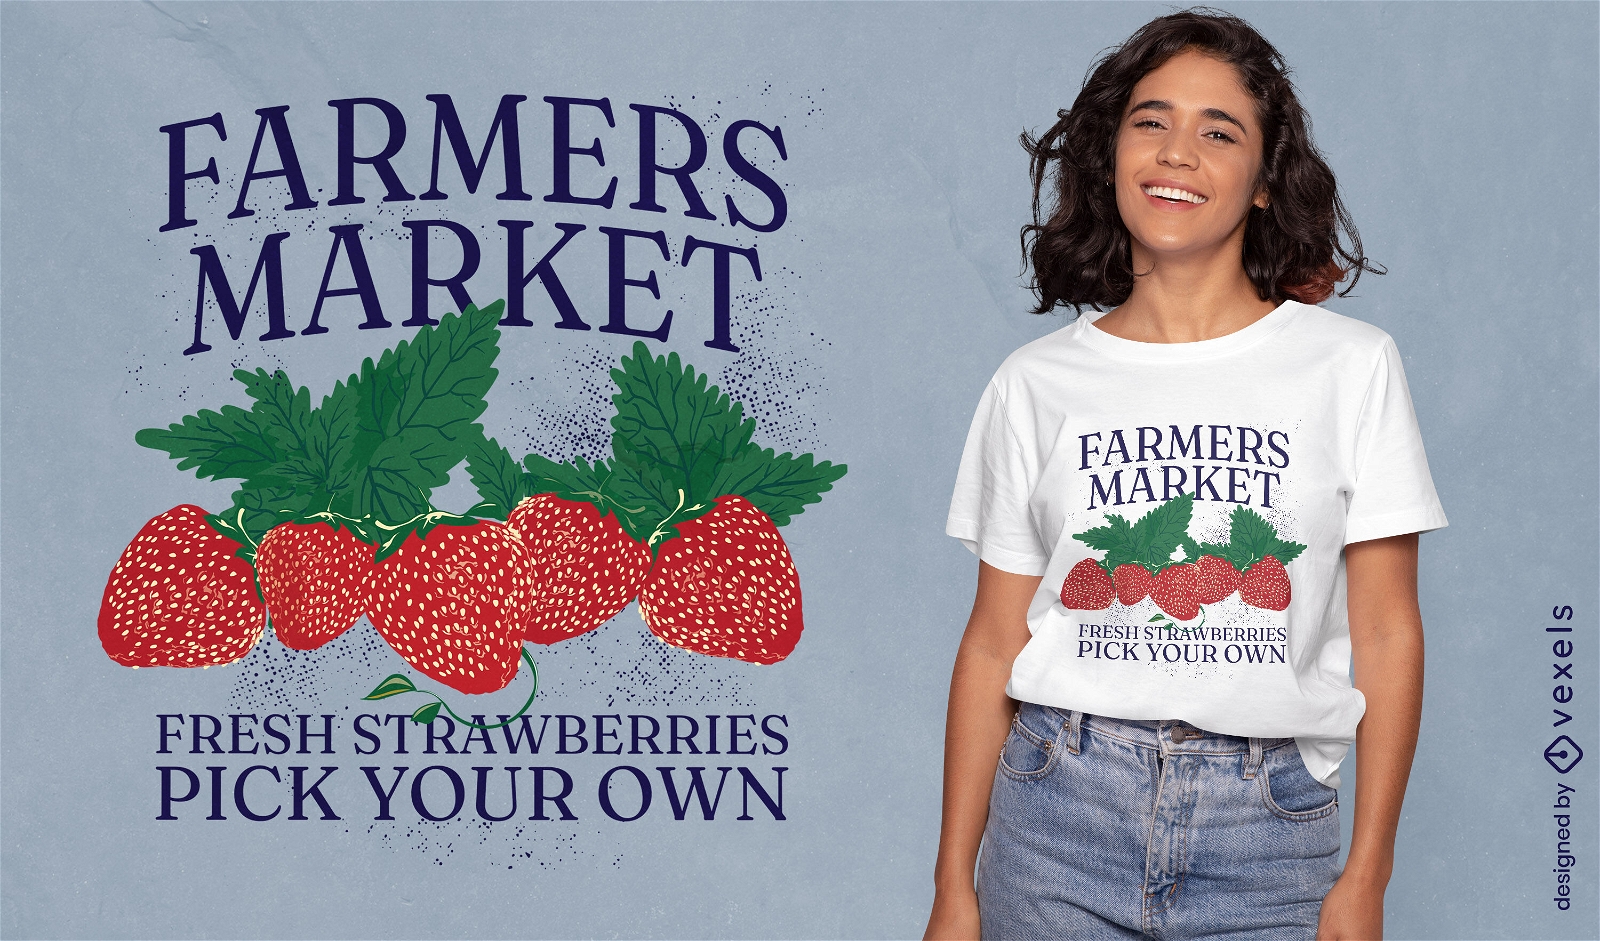 Dise?o de camiseta de fresa del mercado de agricultores.